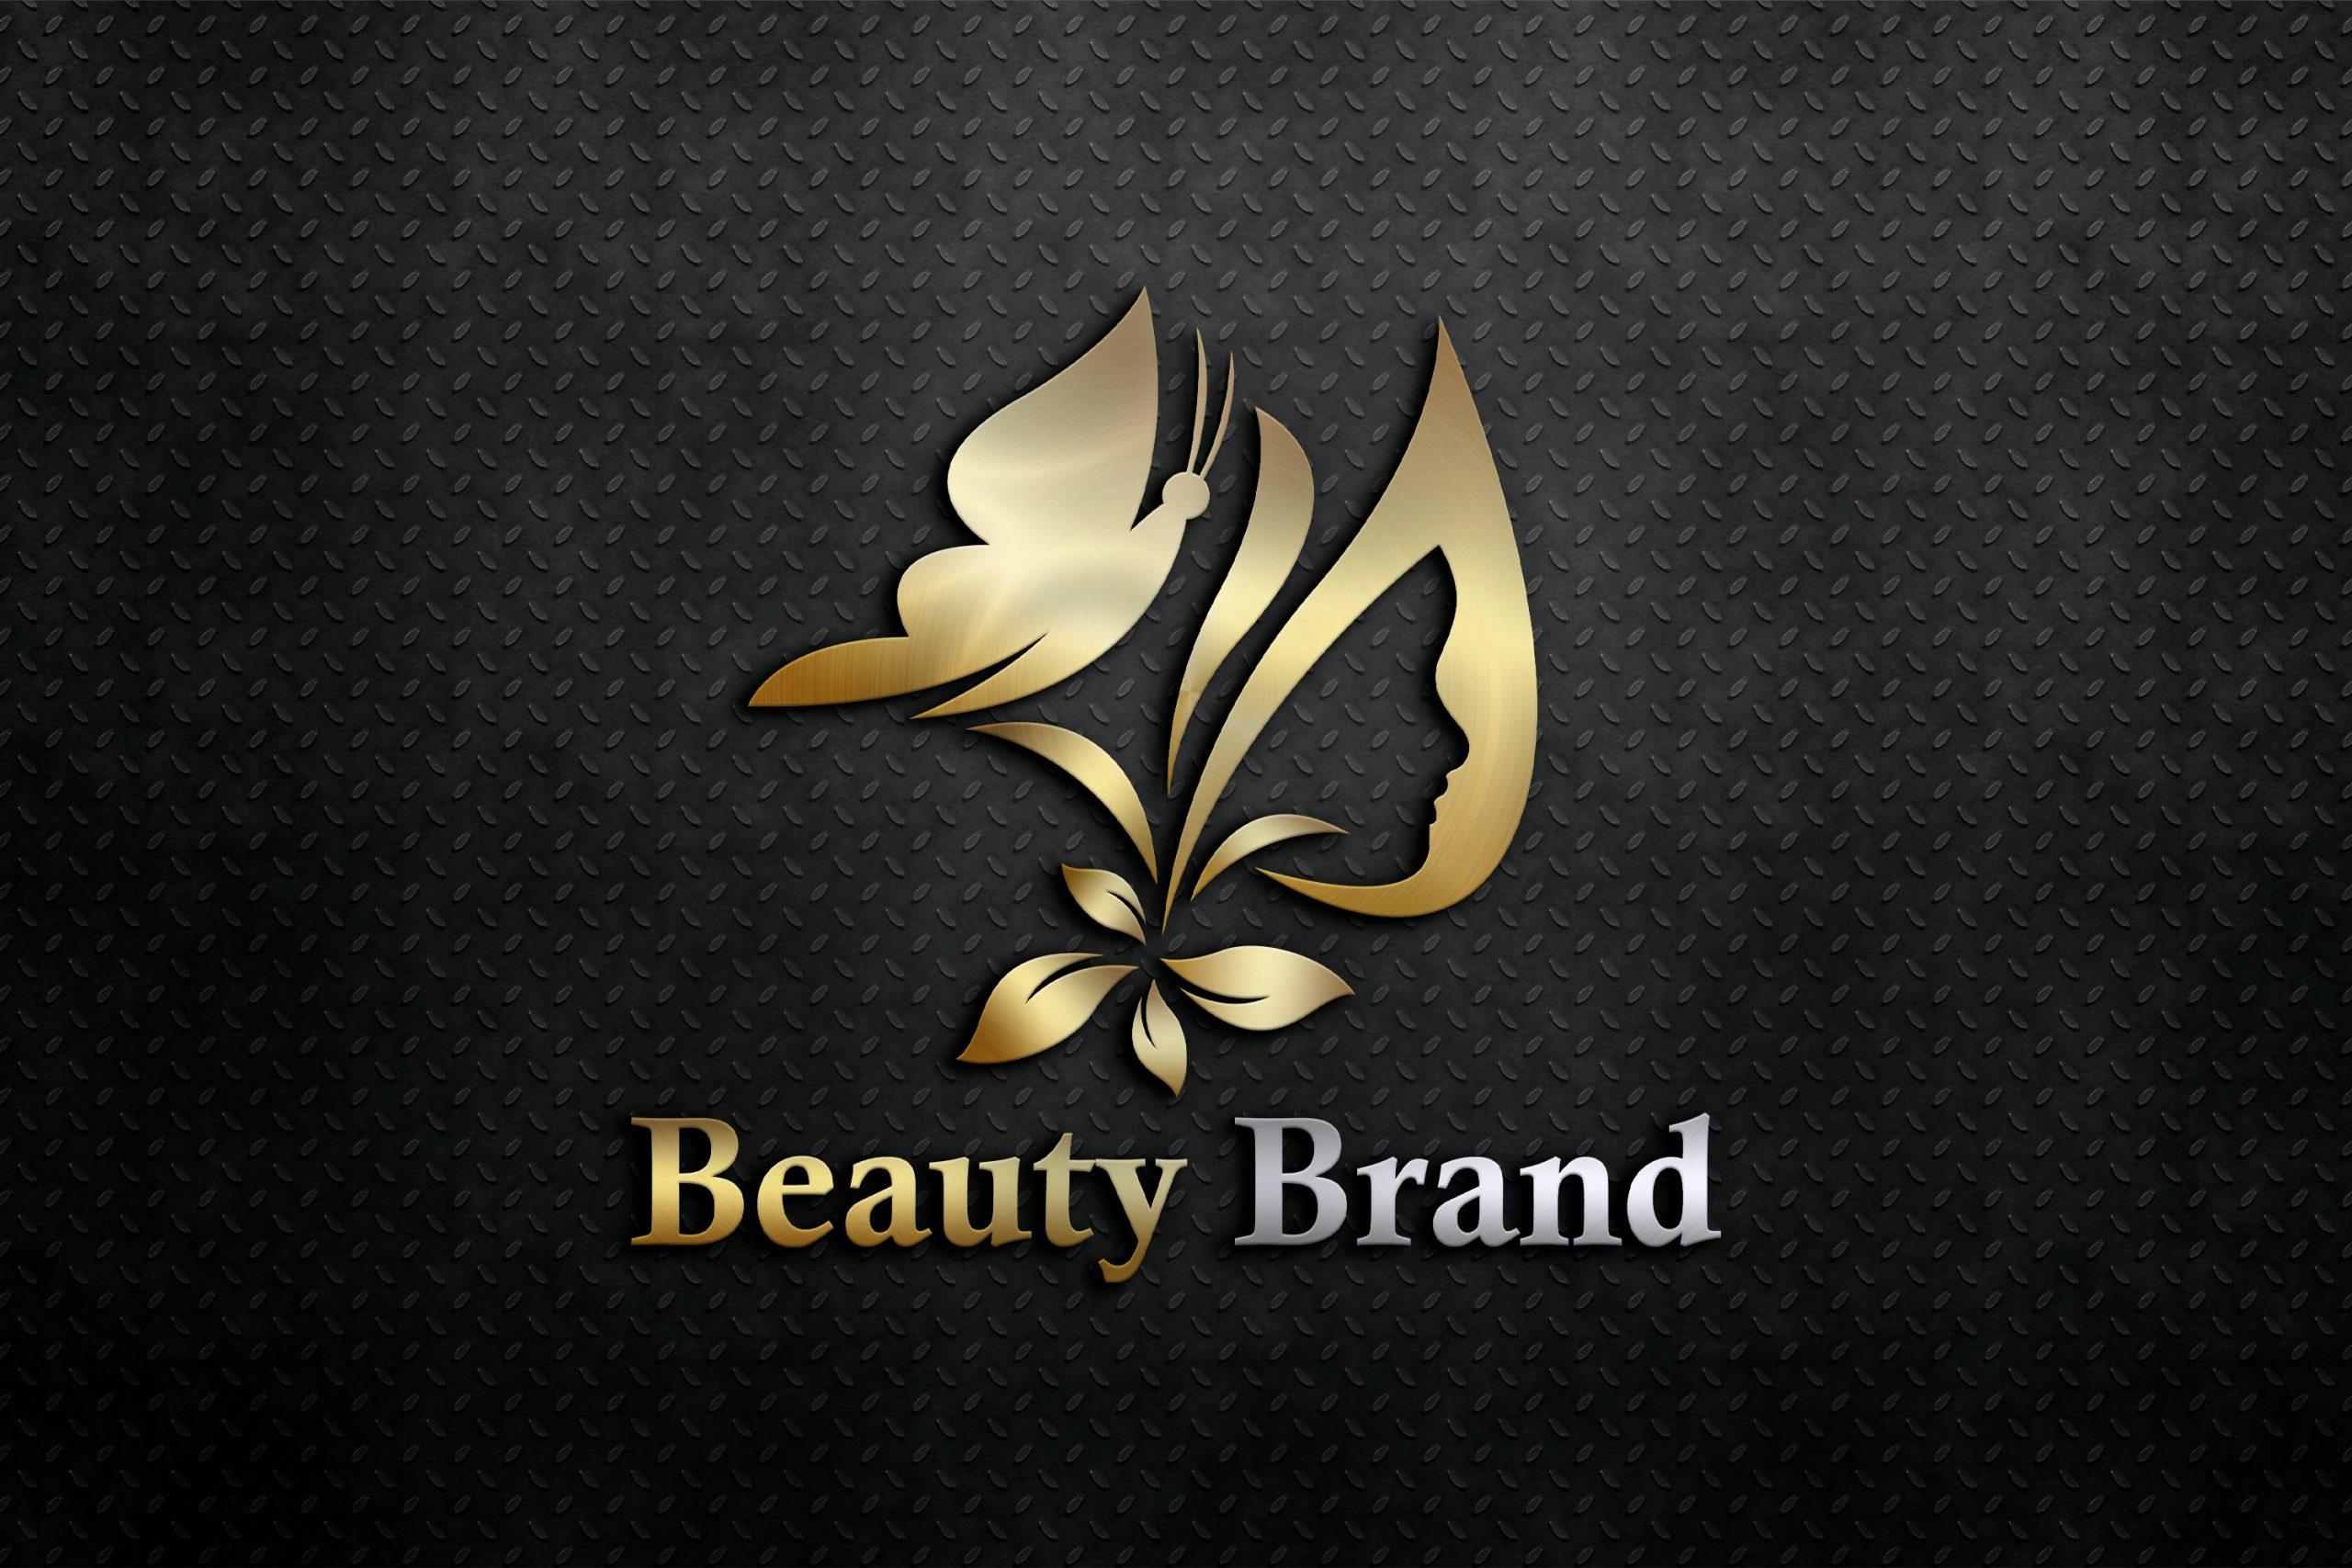 brand and logo design